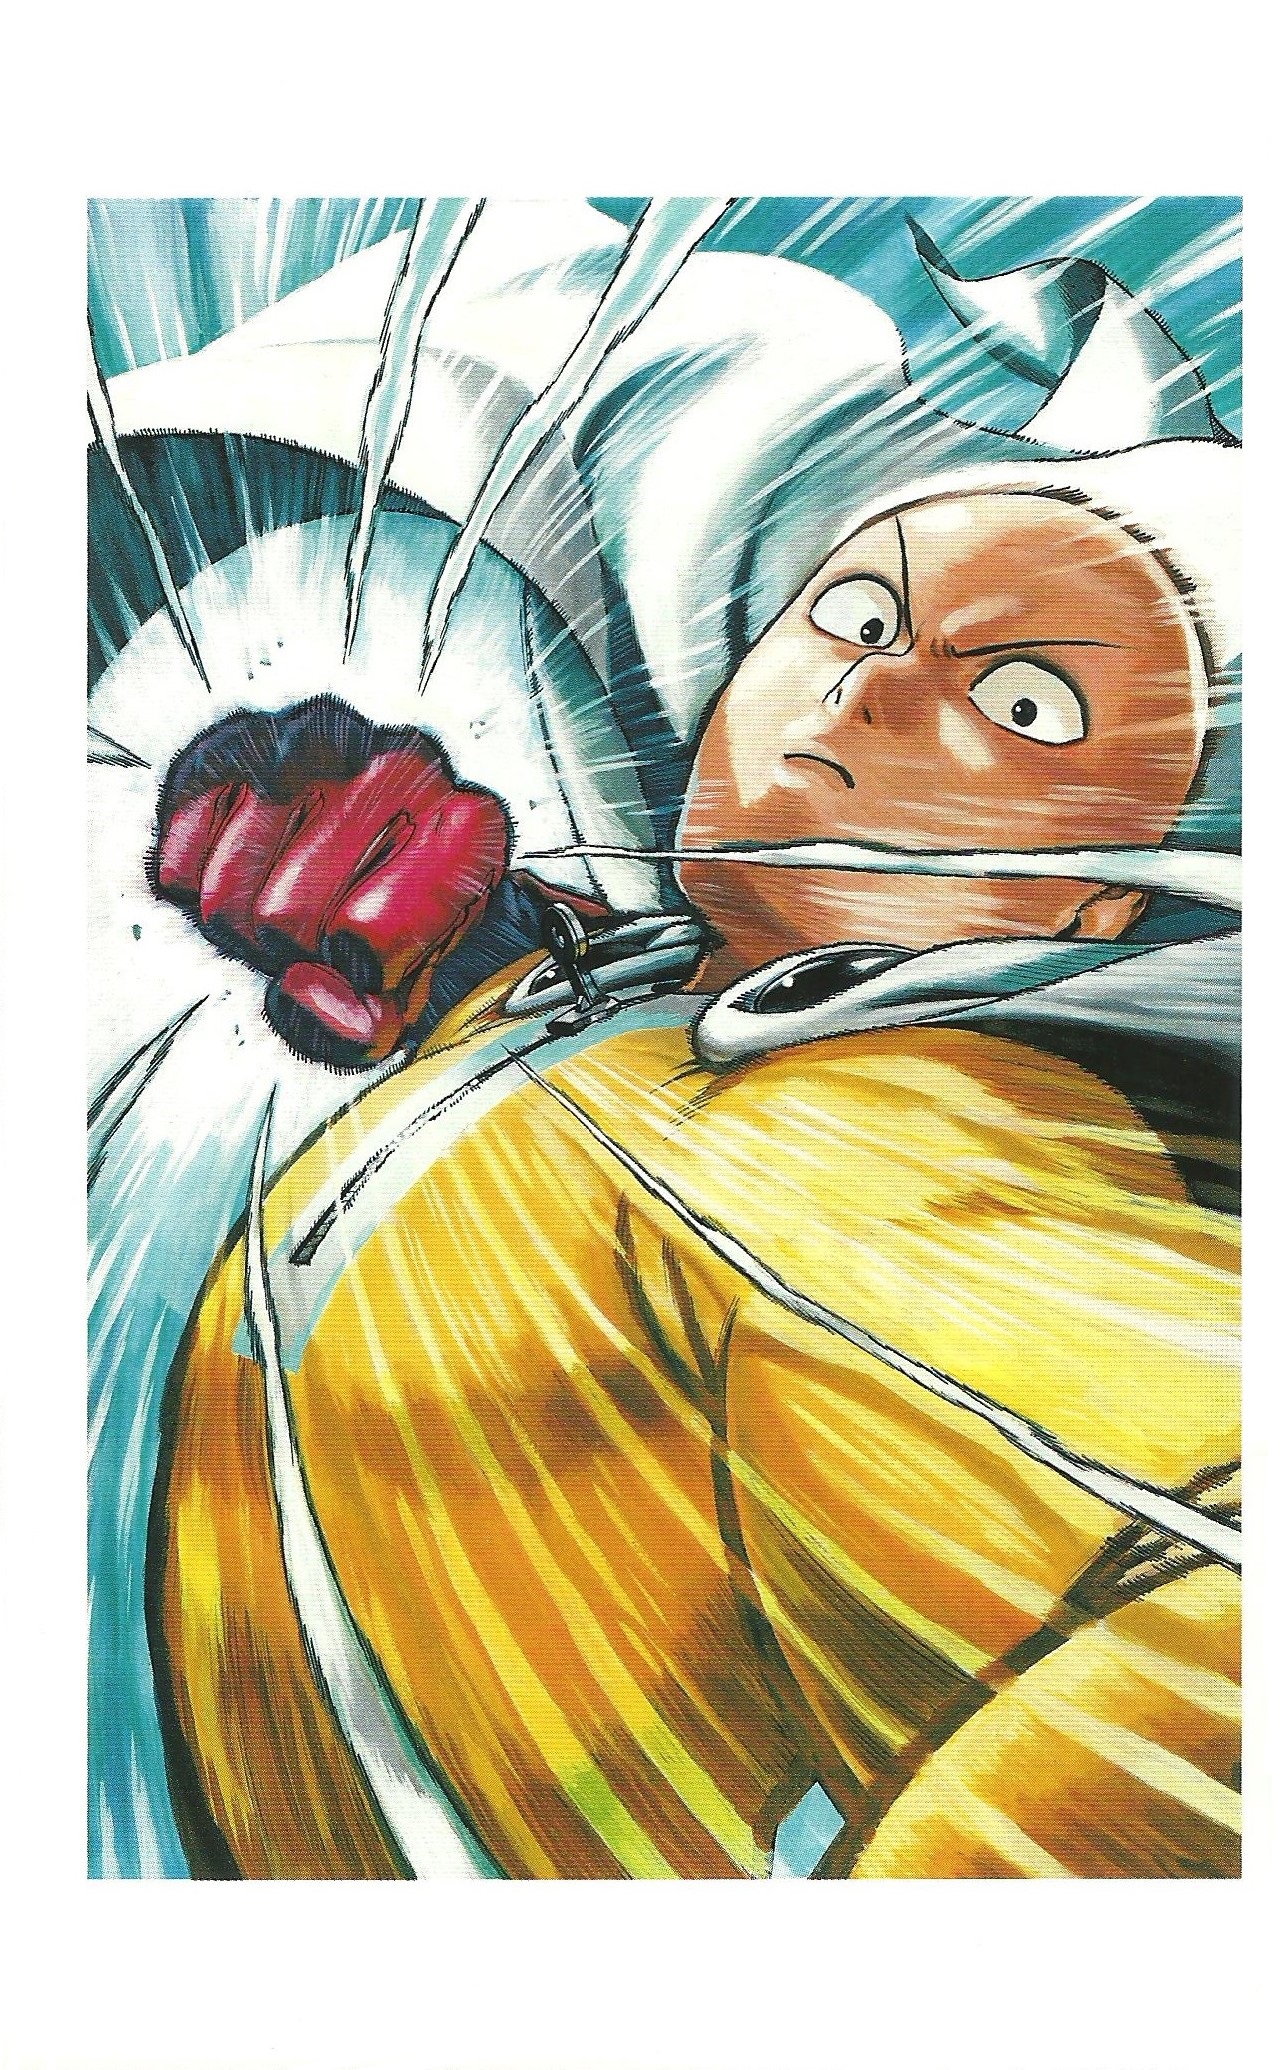 One Punch Man Yusuke Murata Saitama 1286x2070